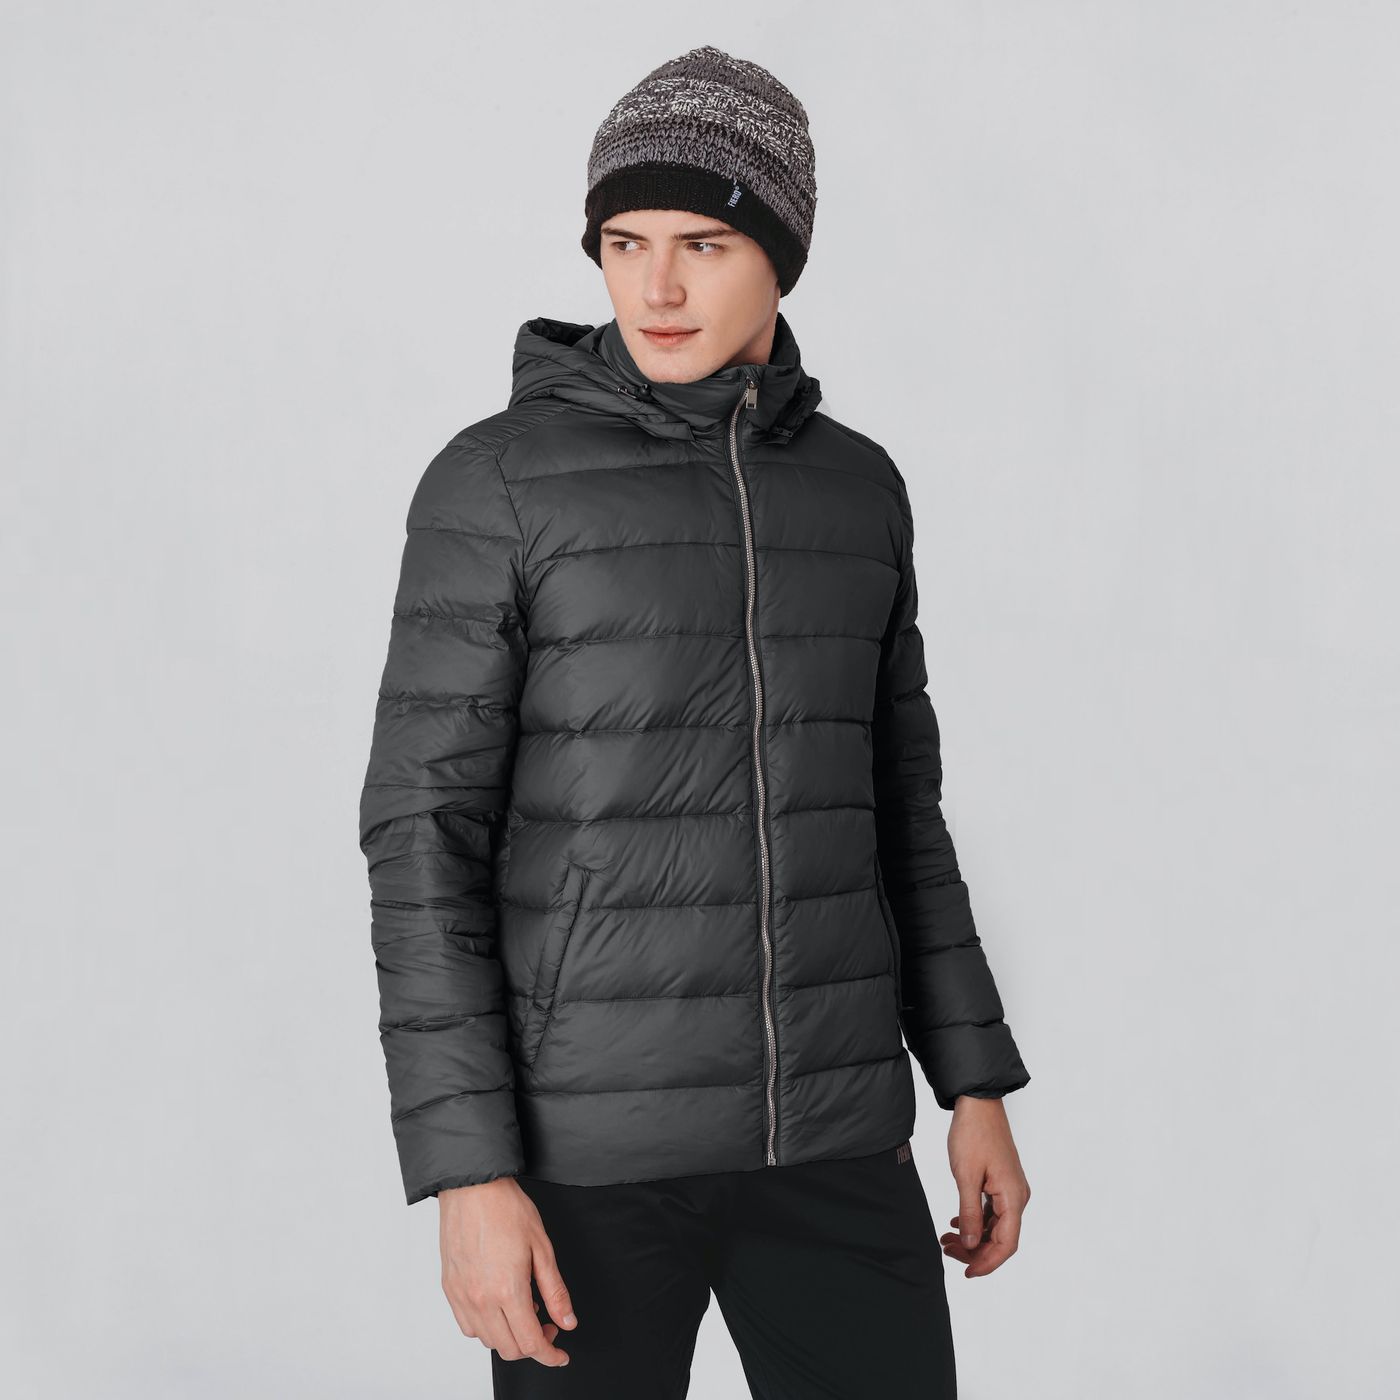 jaqueta masculina para frio extremo